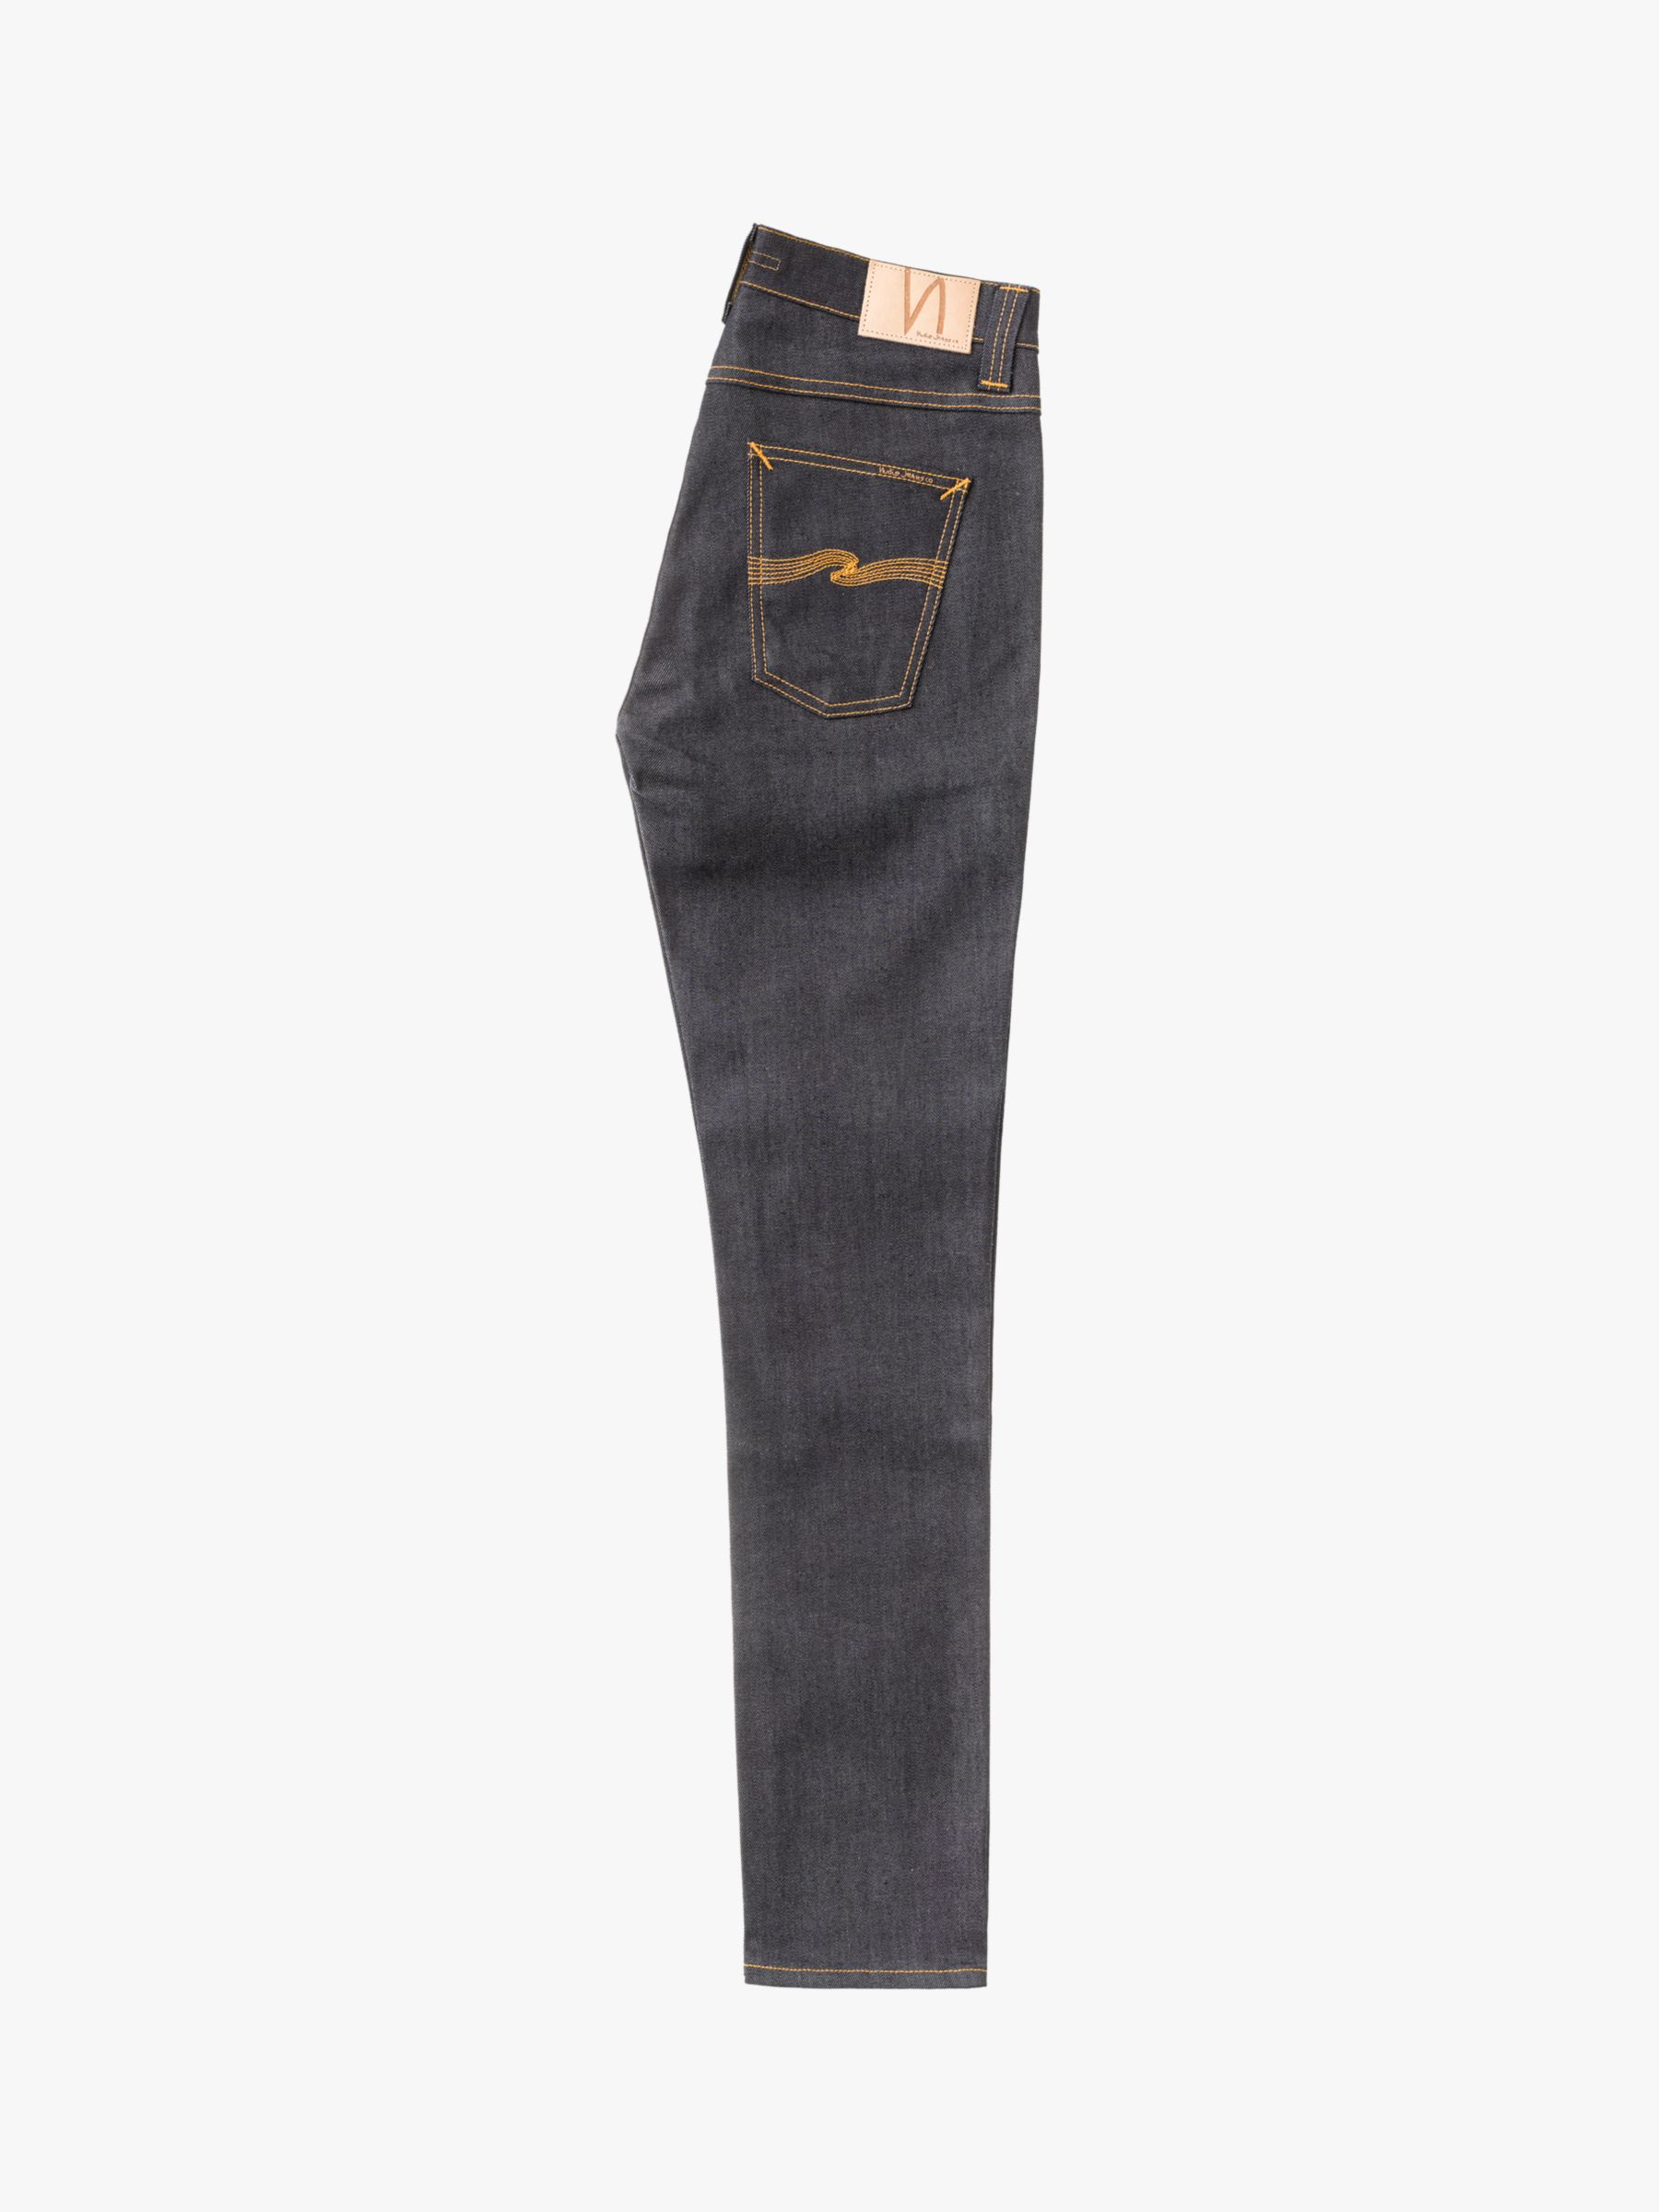 Nudie Jeans Slim Lean Dean Jeans, Dry 16 Dips, 30S